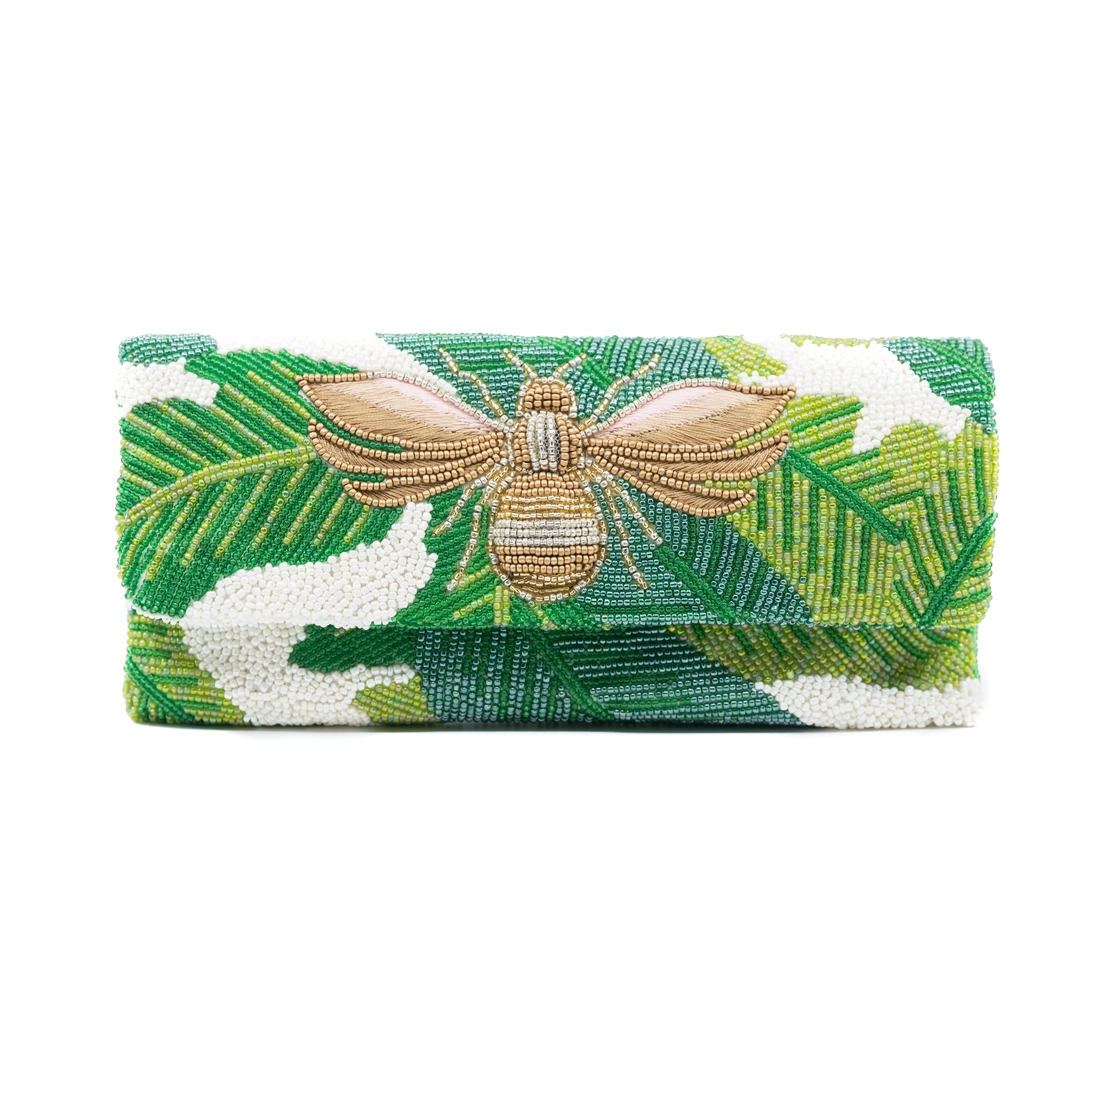 Bee palm hand-beaded bag